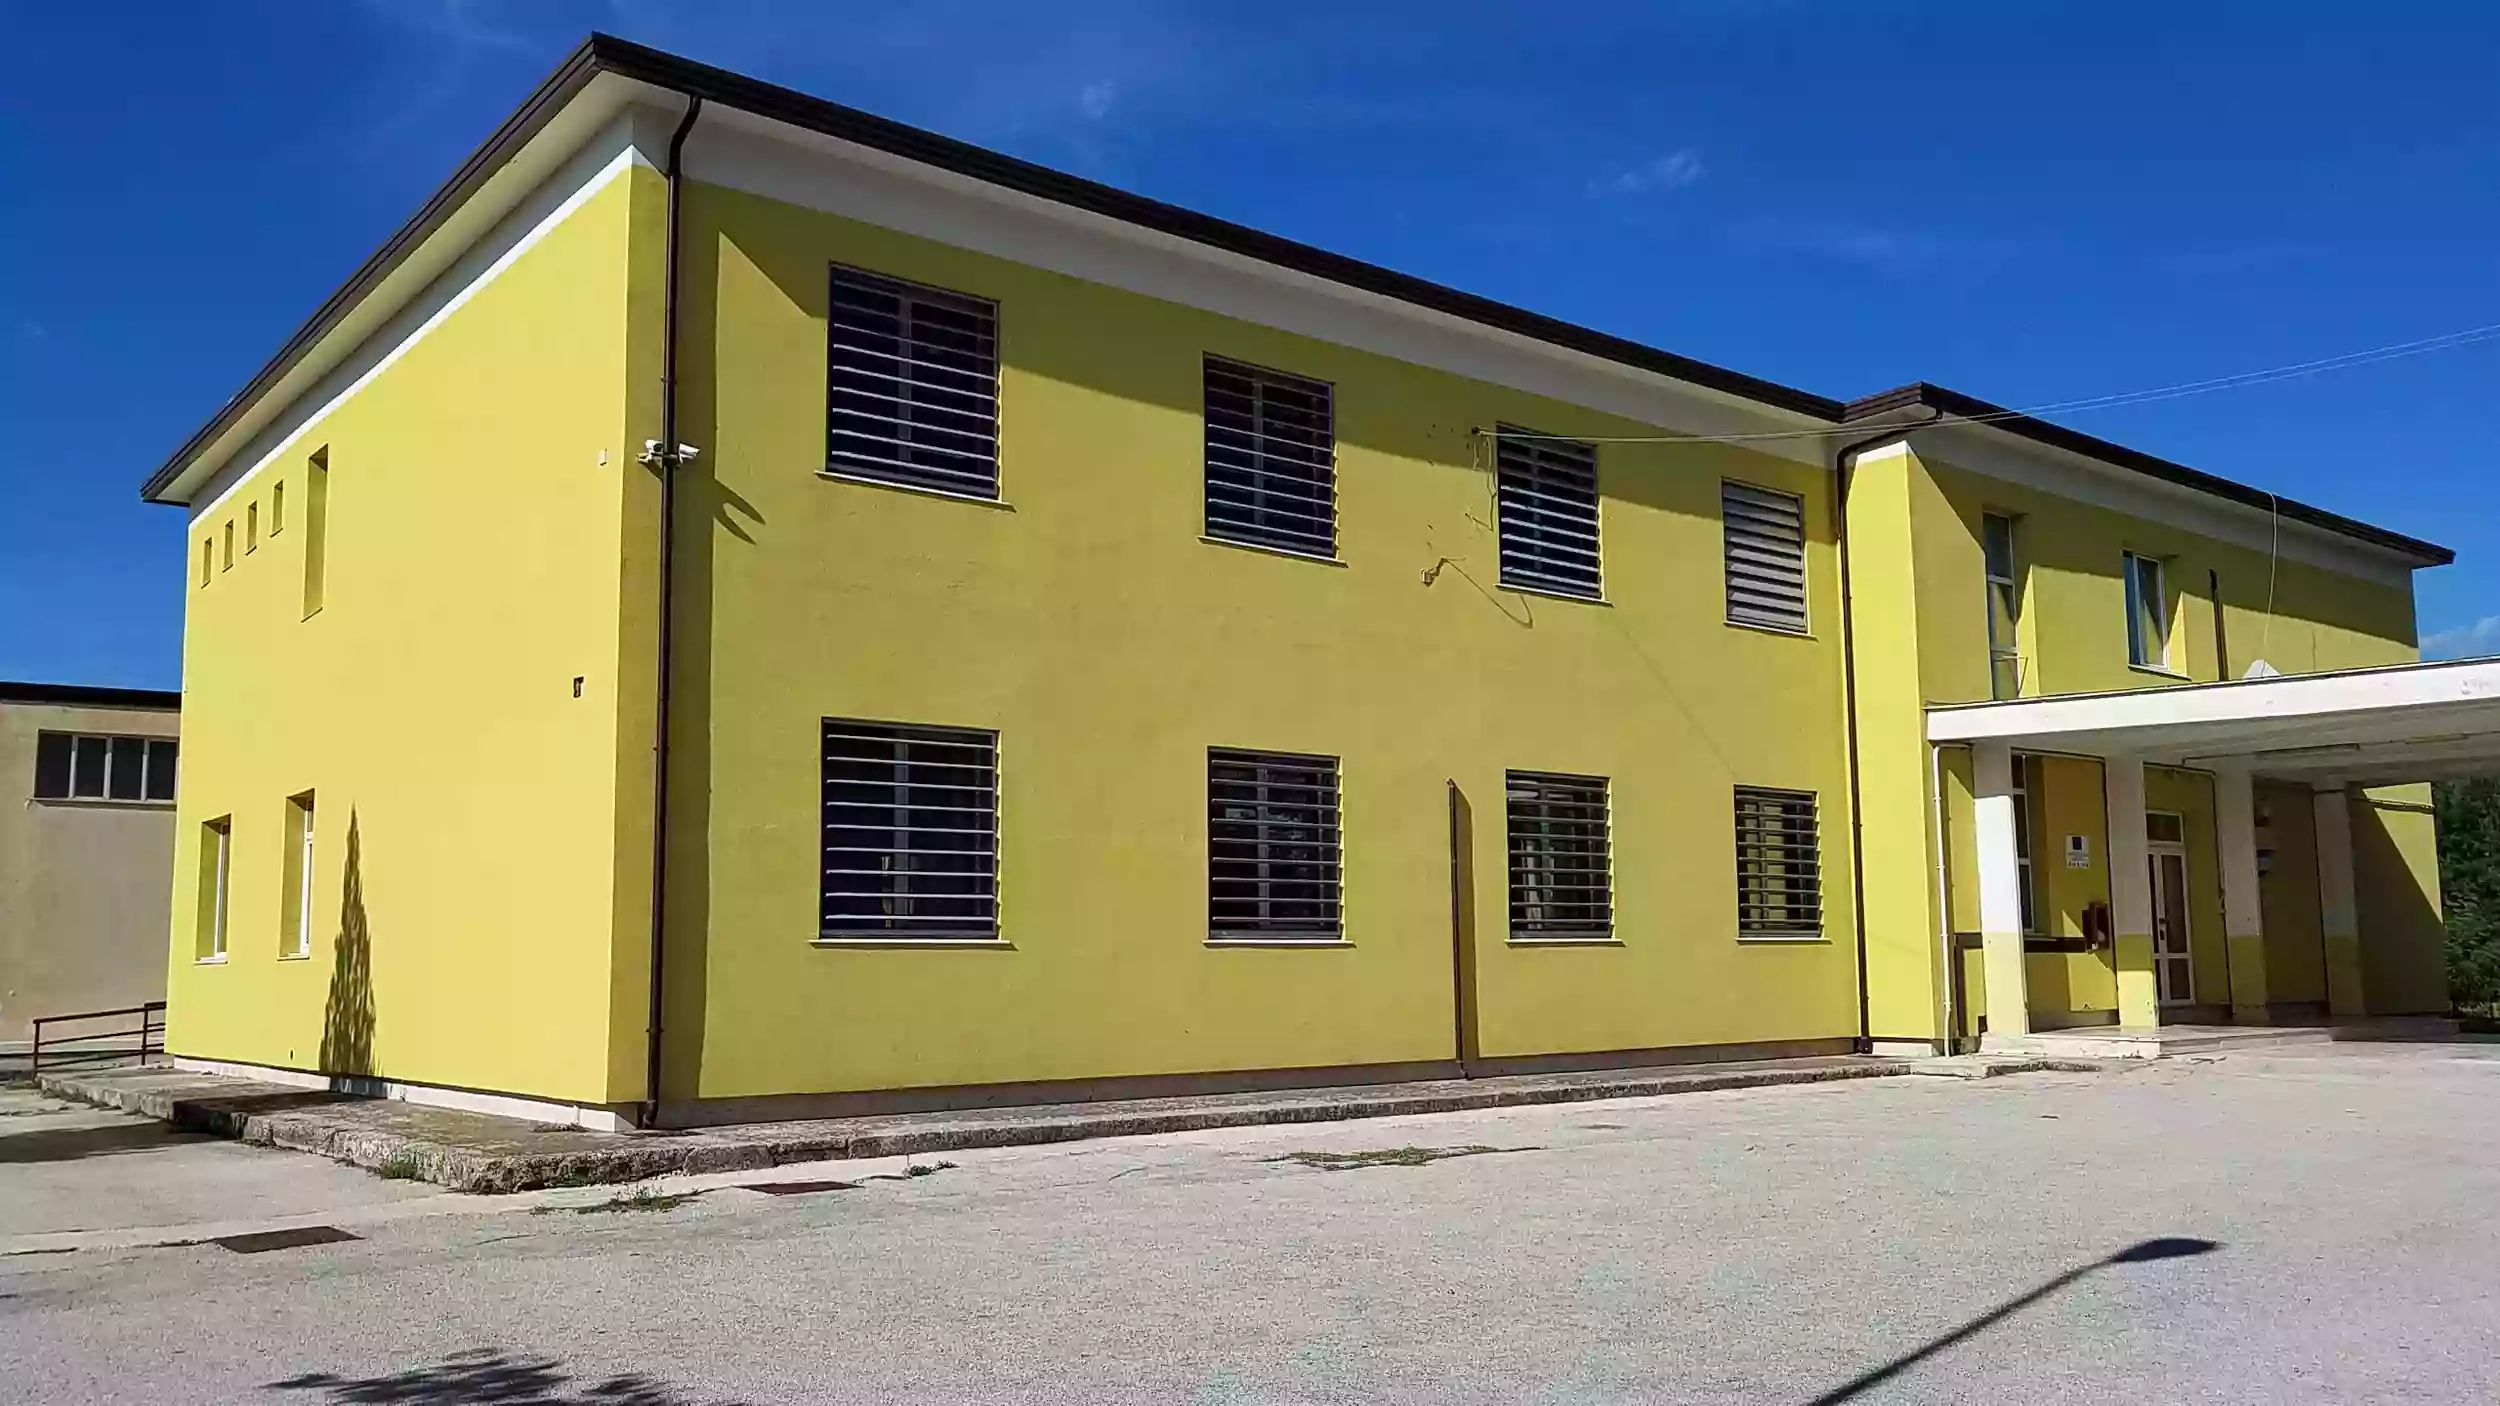 Istituto Tecnico Statale Agrario "F. De Sanctis - O. D'Agostino" - Scuola Superiore